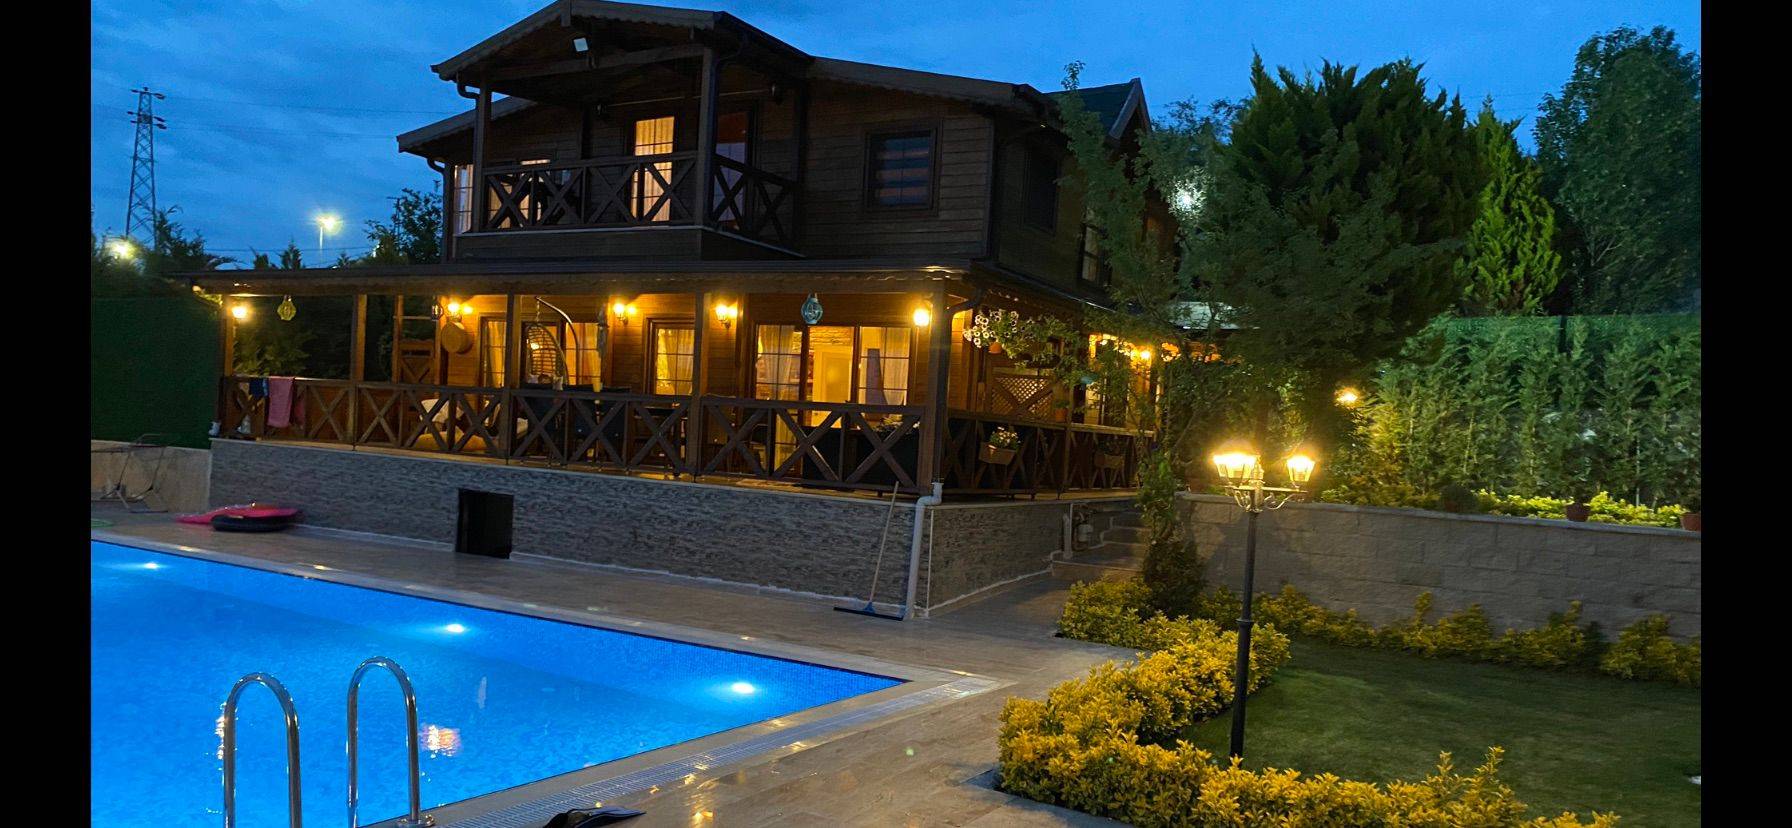 Ağva'da Özel Havuzlu ve Geniş Bahçeli, Deniz Manzaralı, Korunaklı, Ahşap Villa